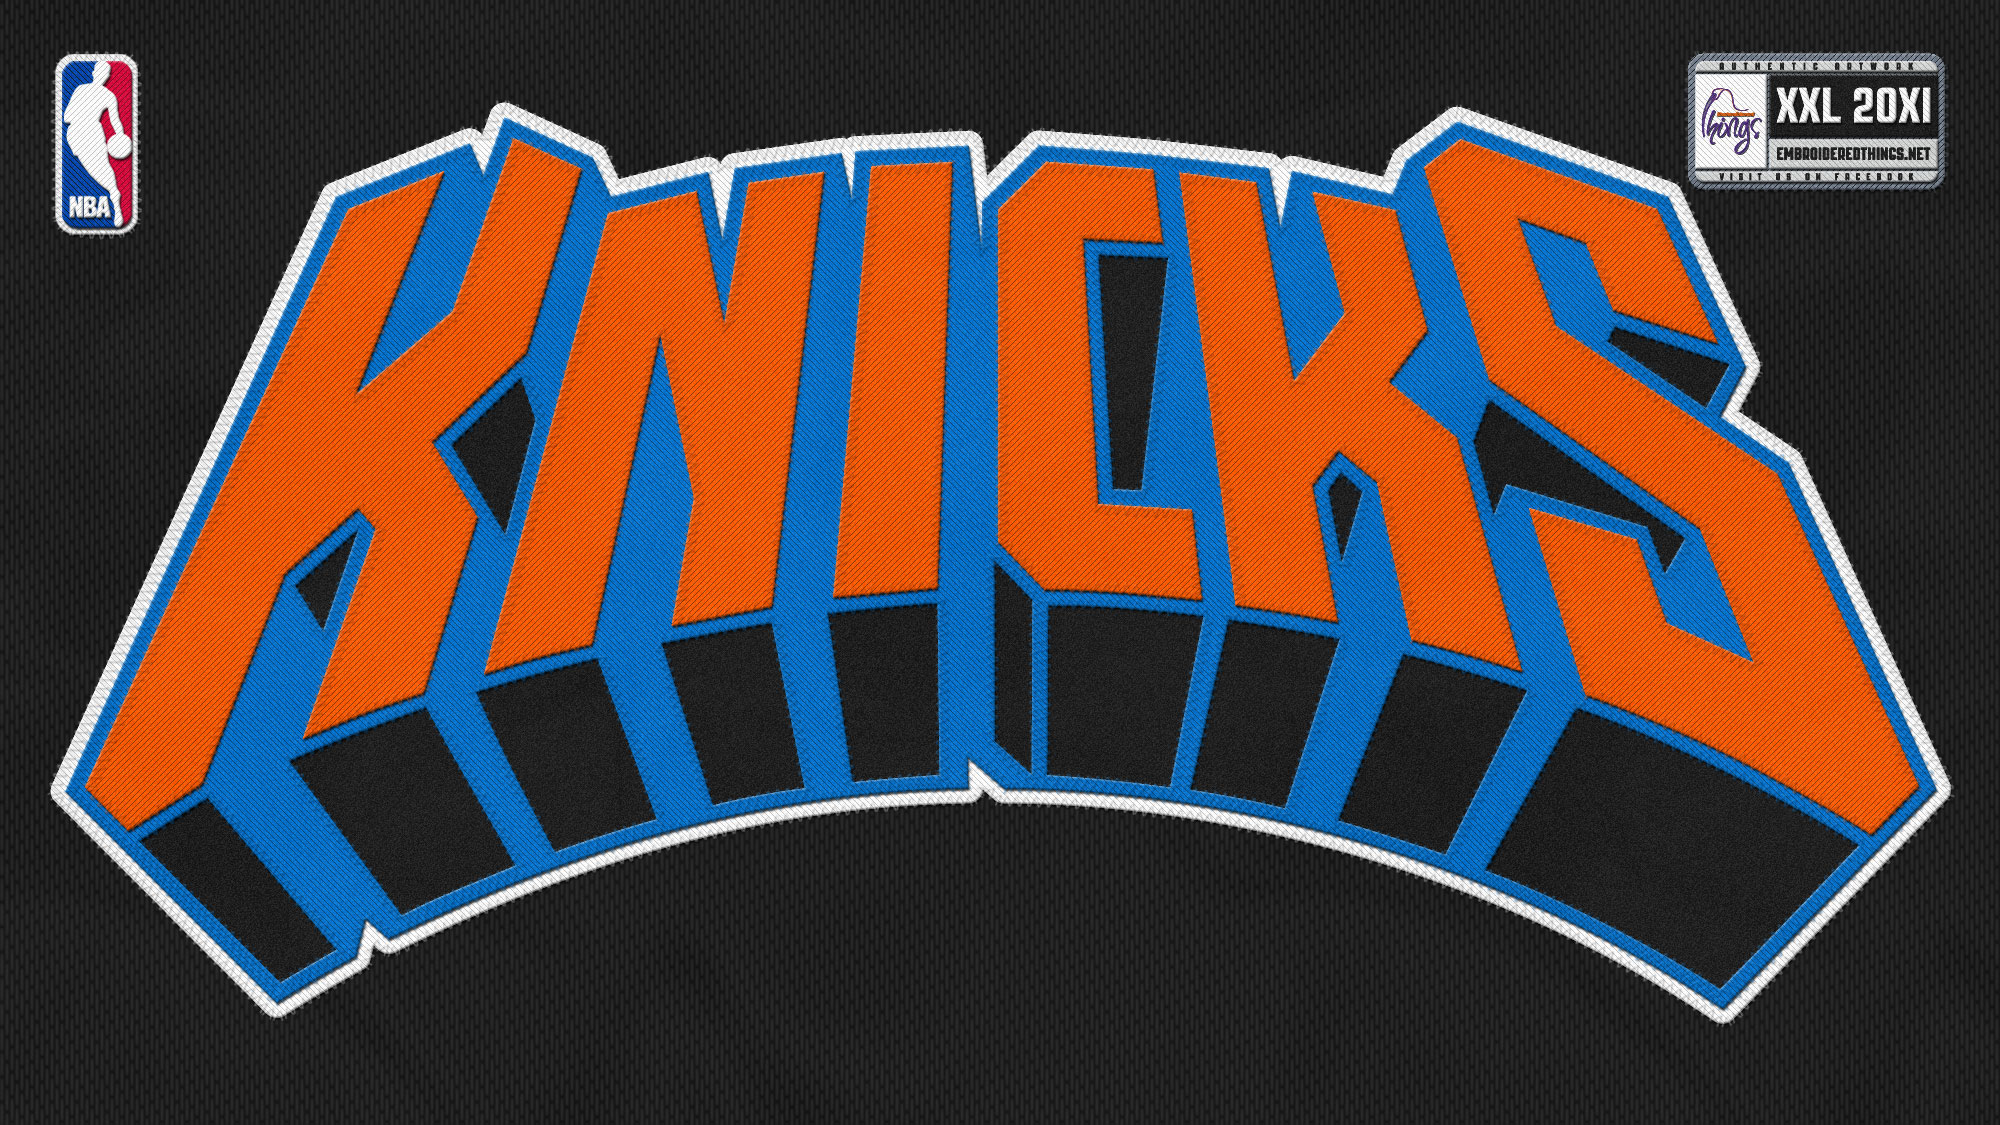 Nba New York Knicks Basketball HD Wallpaper Widescreen For